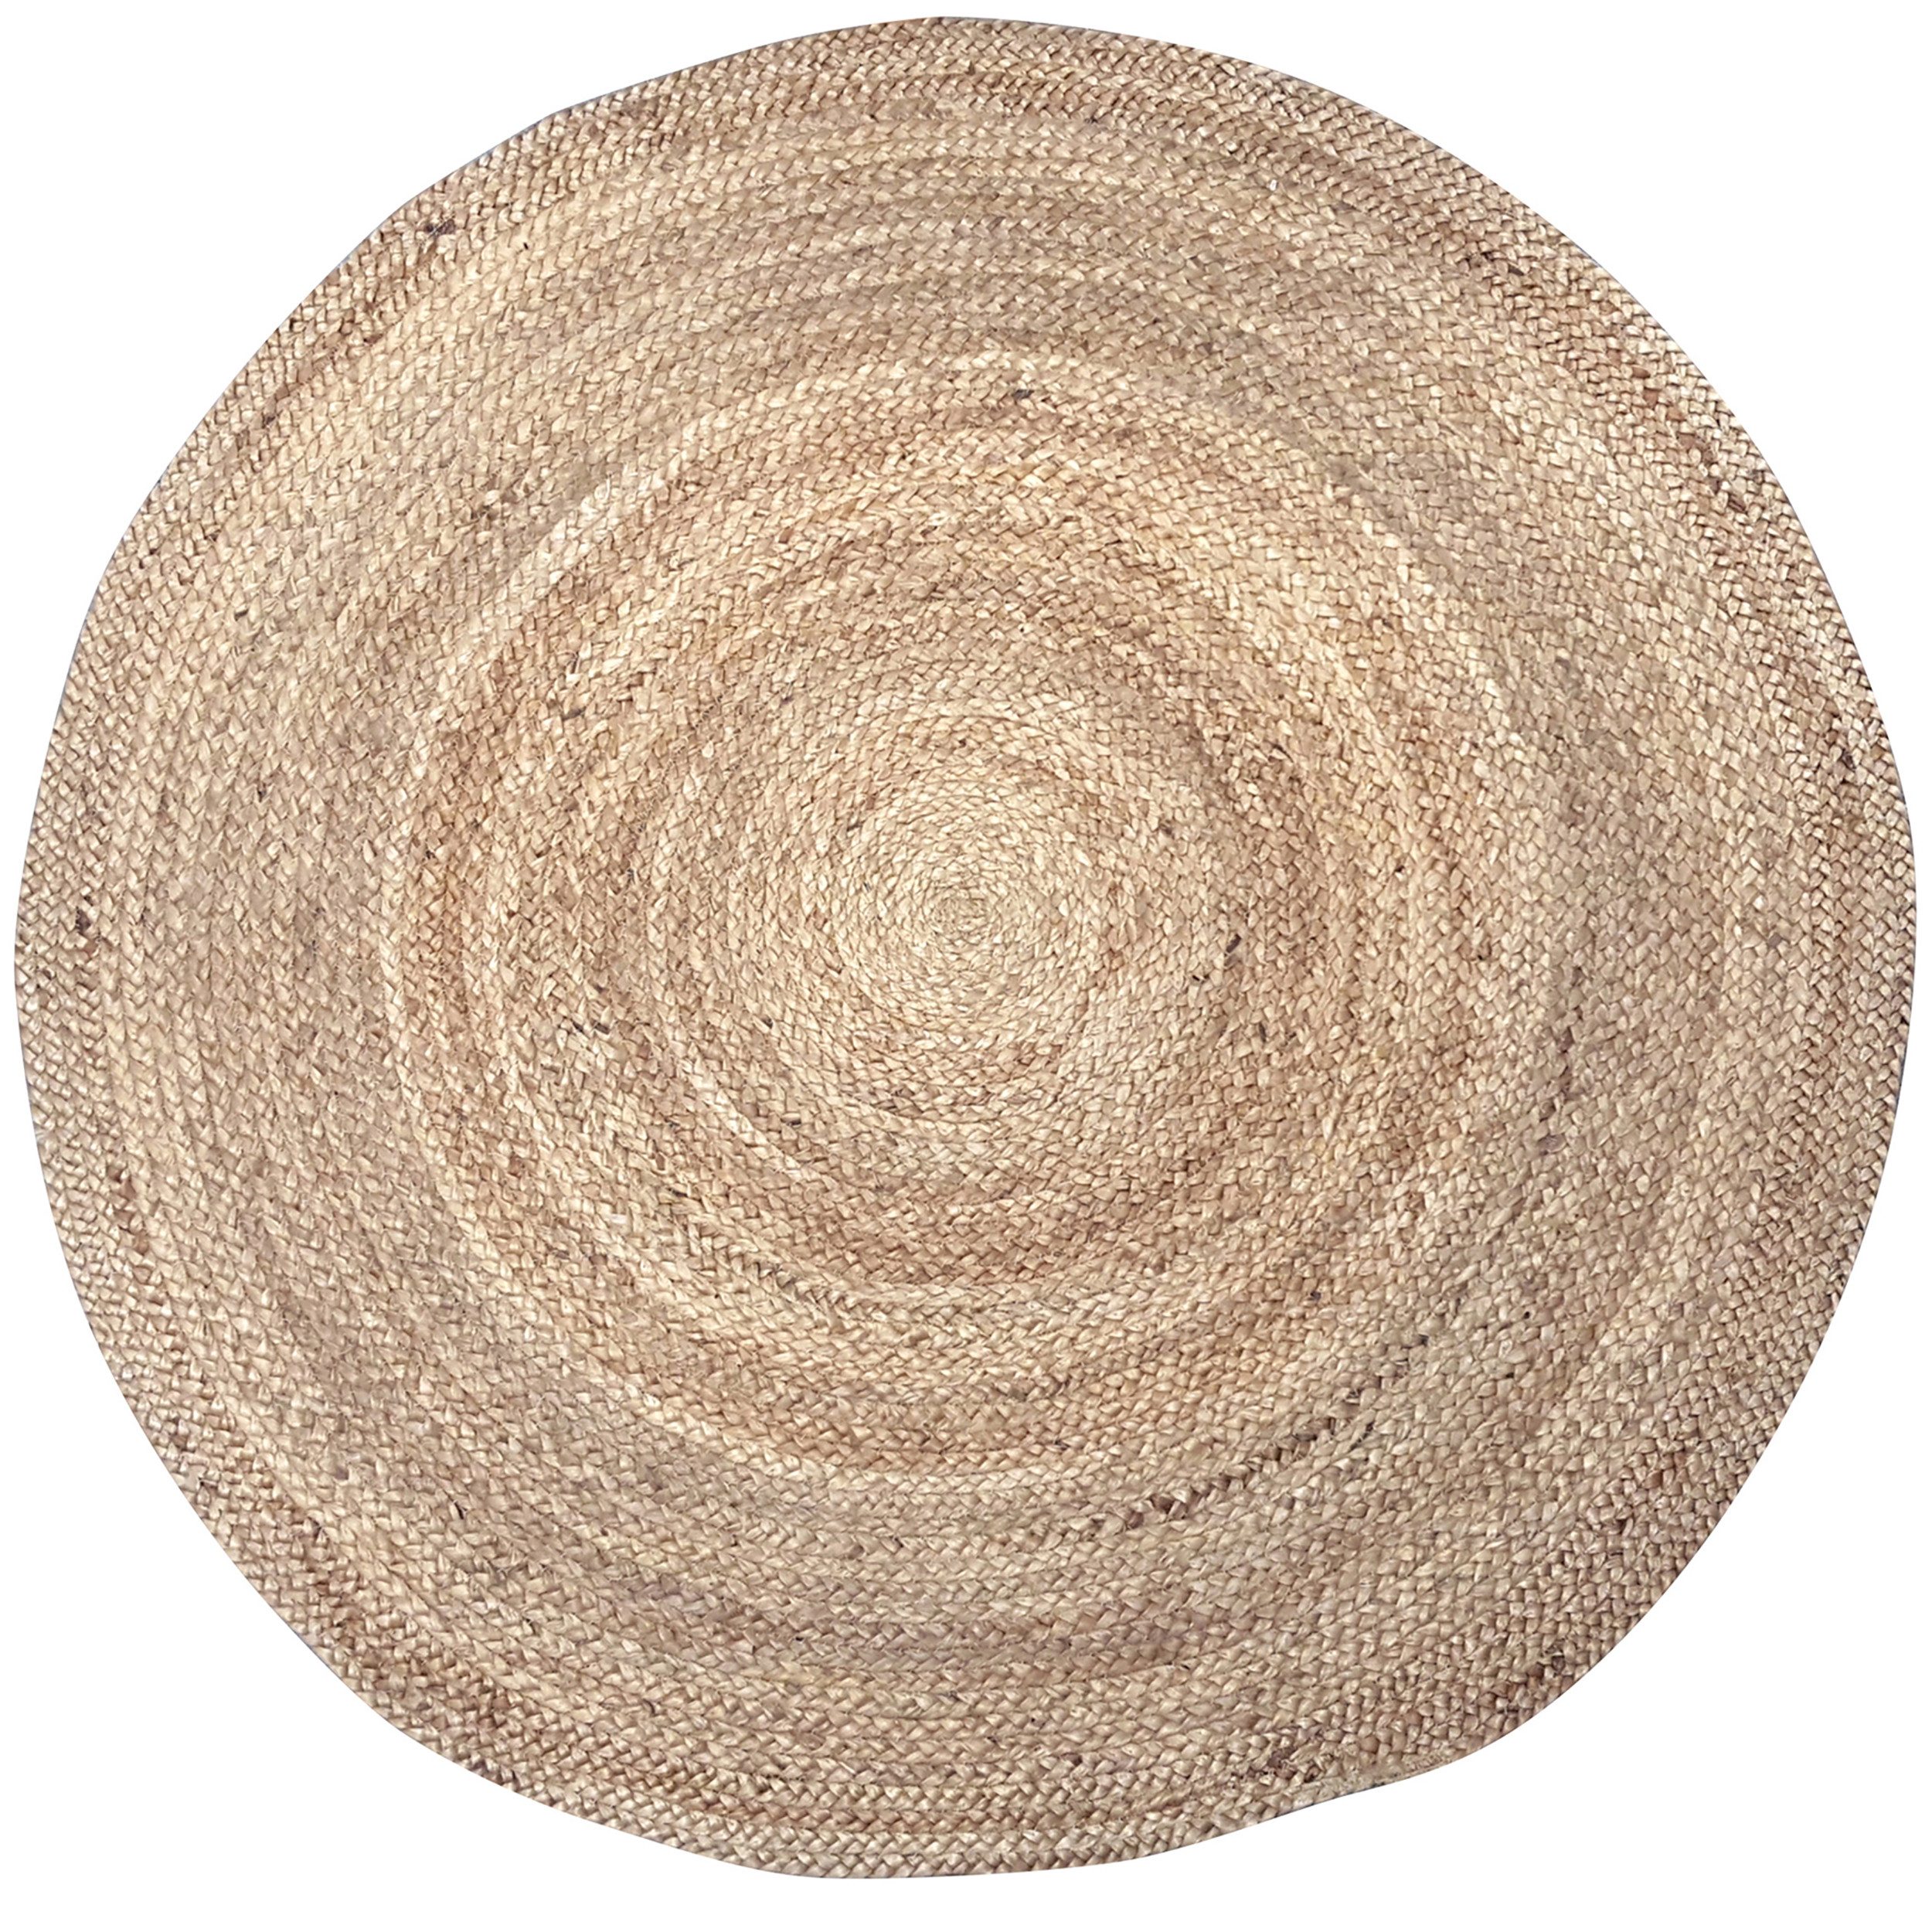 Teppich Teppich aus 100% Naturfaser Jute Juteteppich Rund Naturteppich, Annastore, Ø 110 cm, Bastteppich, Sisal Teppich